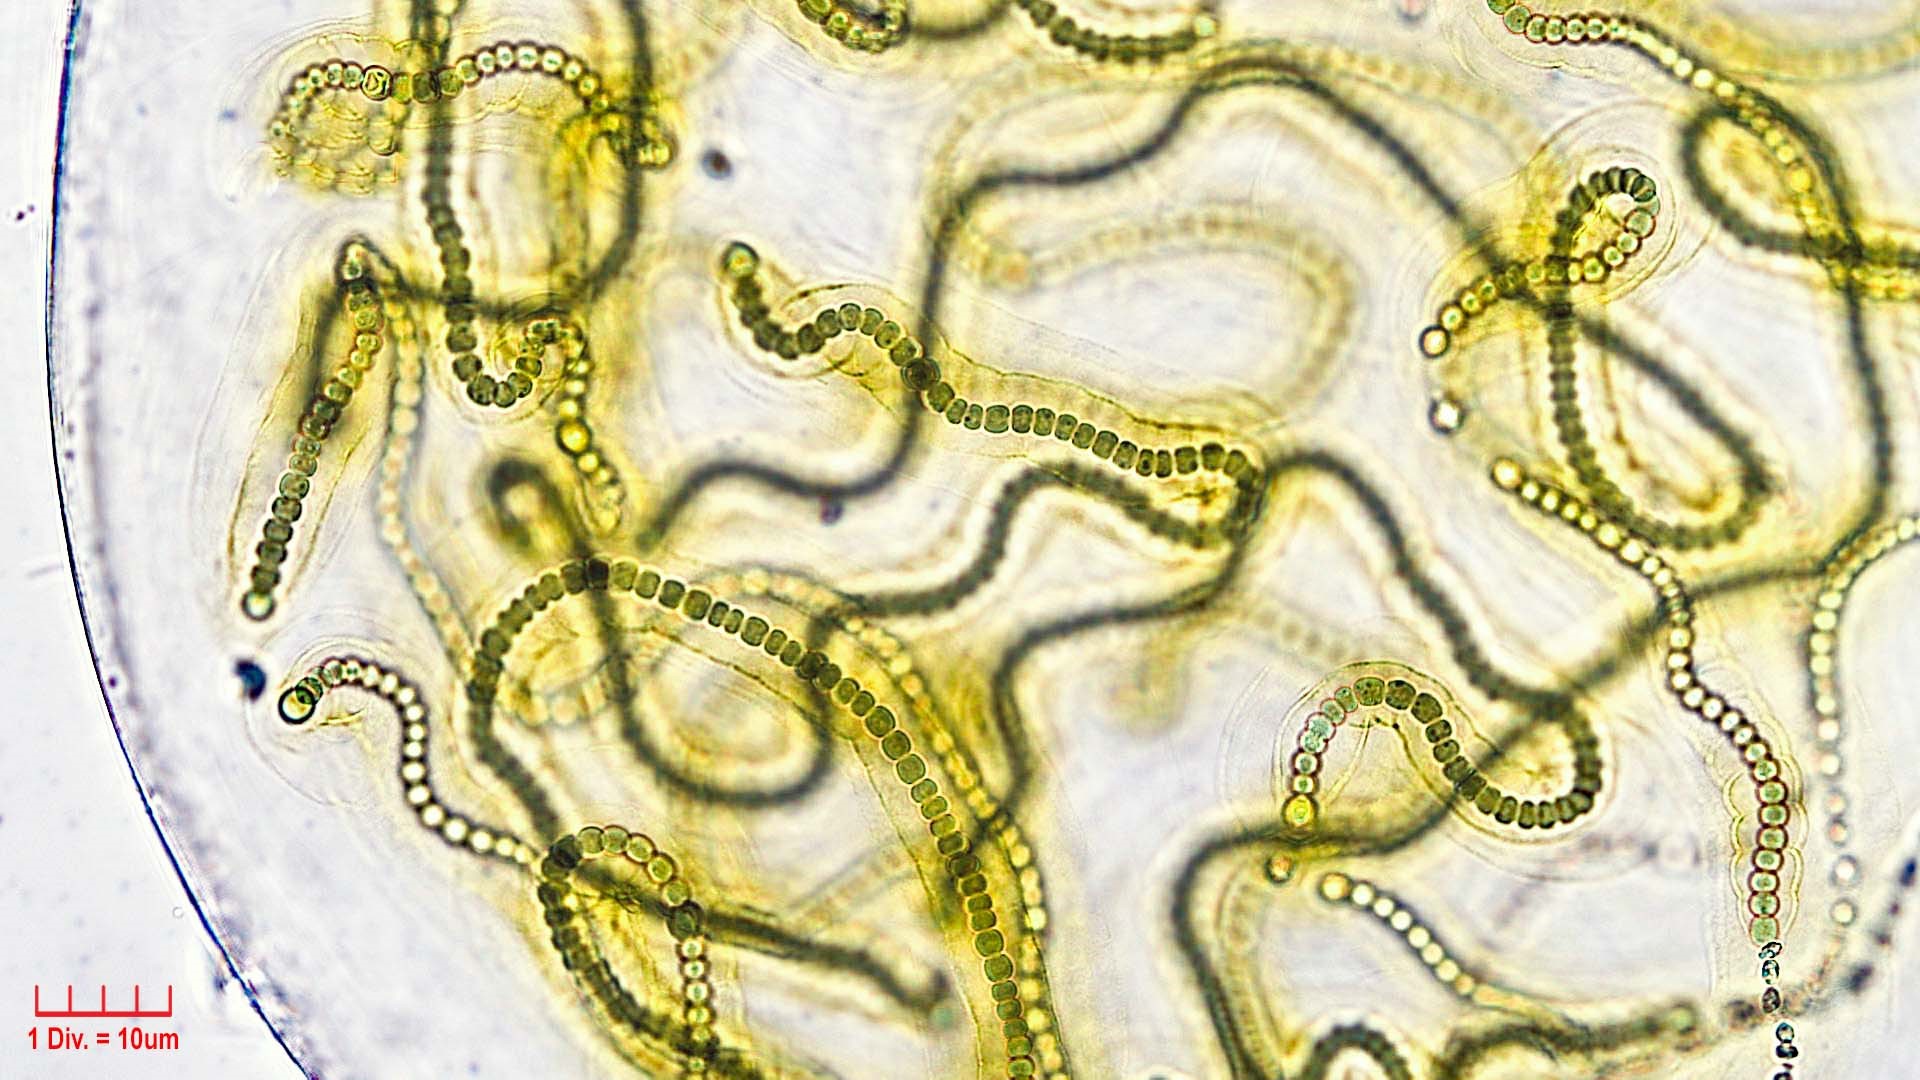 ././././Cyanobacteria/Nostocales/Nostocaceae/Nostoc/microscopicum/nostoc-microscopicum-603.jpg